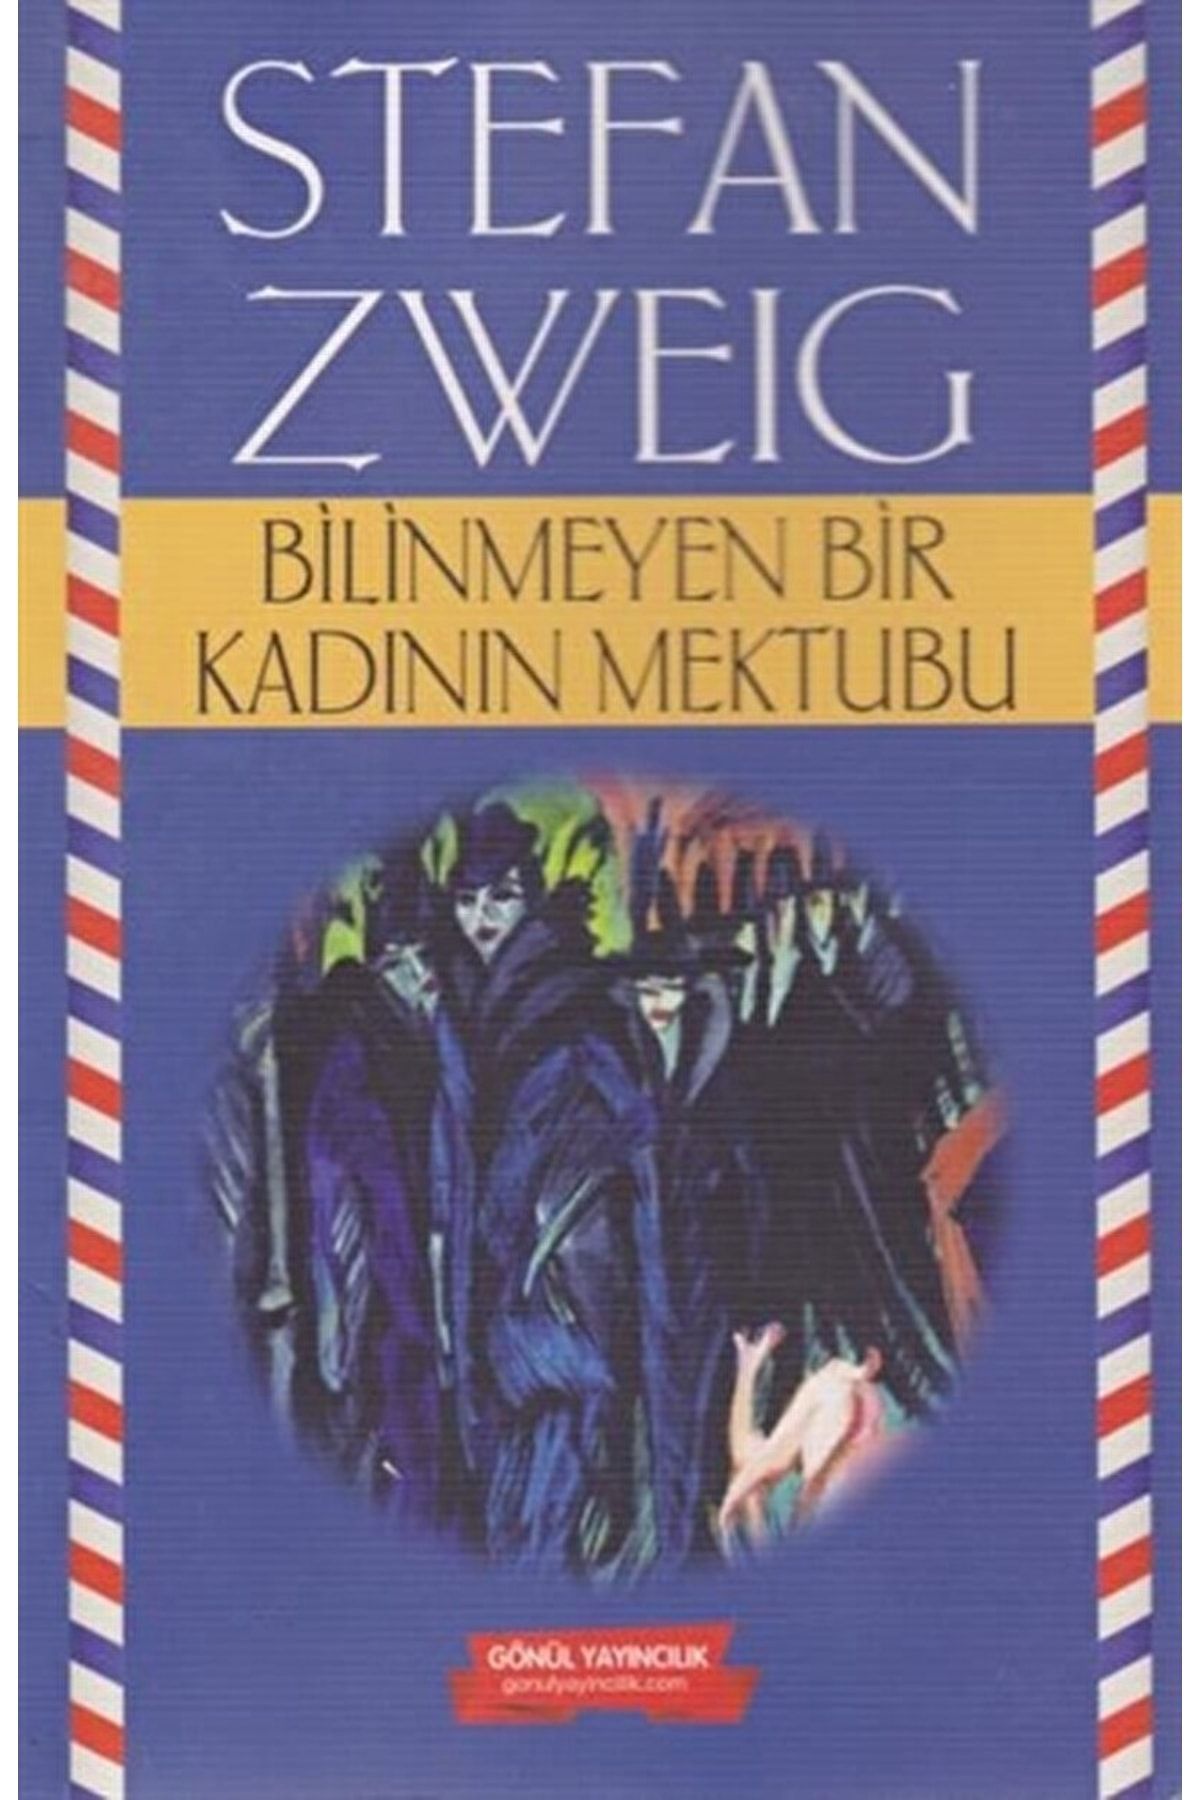 GÖNÜL YAYINCILIK Bilinmeyen Bir Kadının Mektubu / Stefan Zweig / / 9786057614148